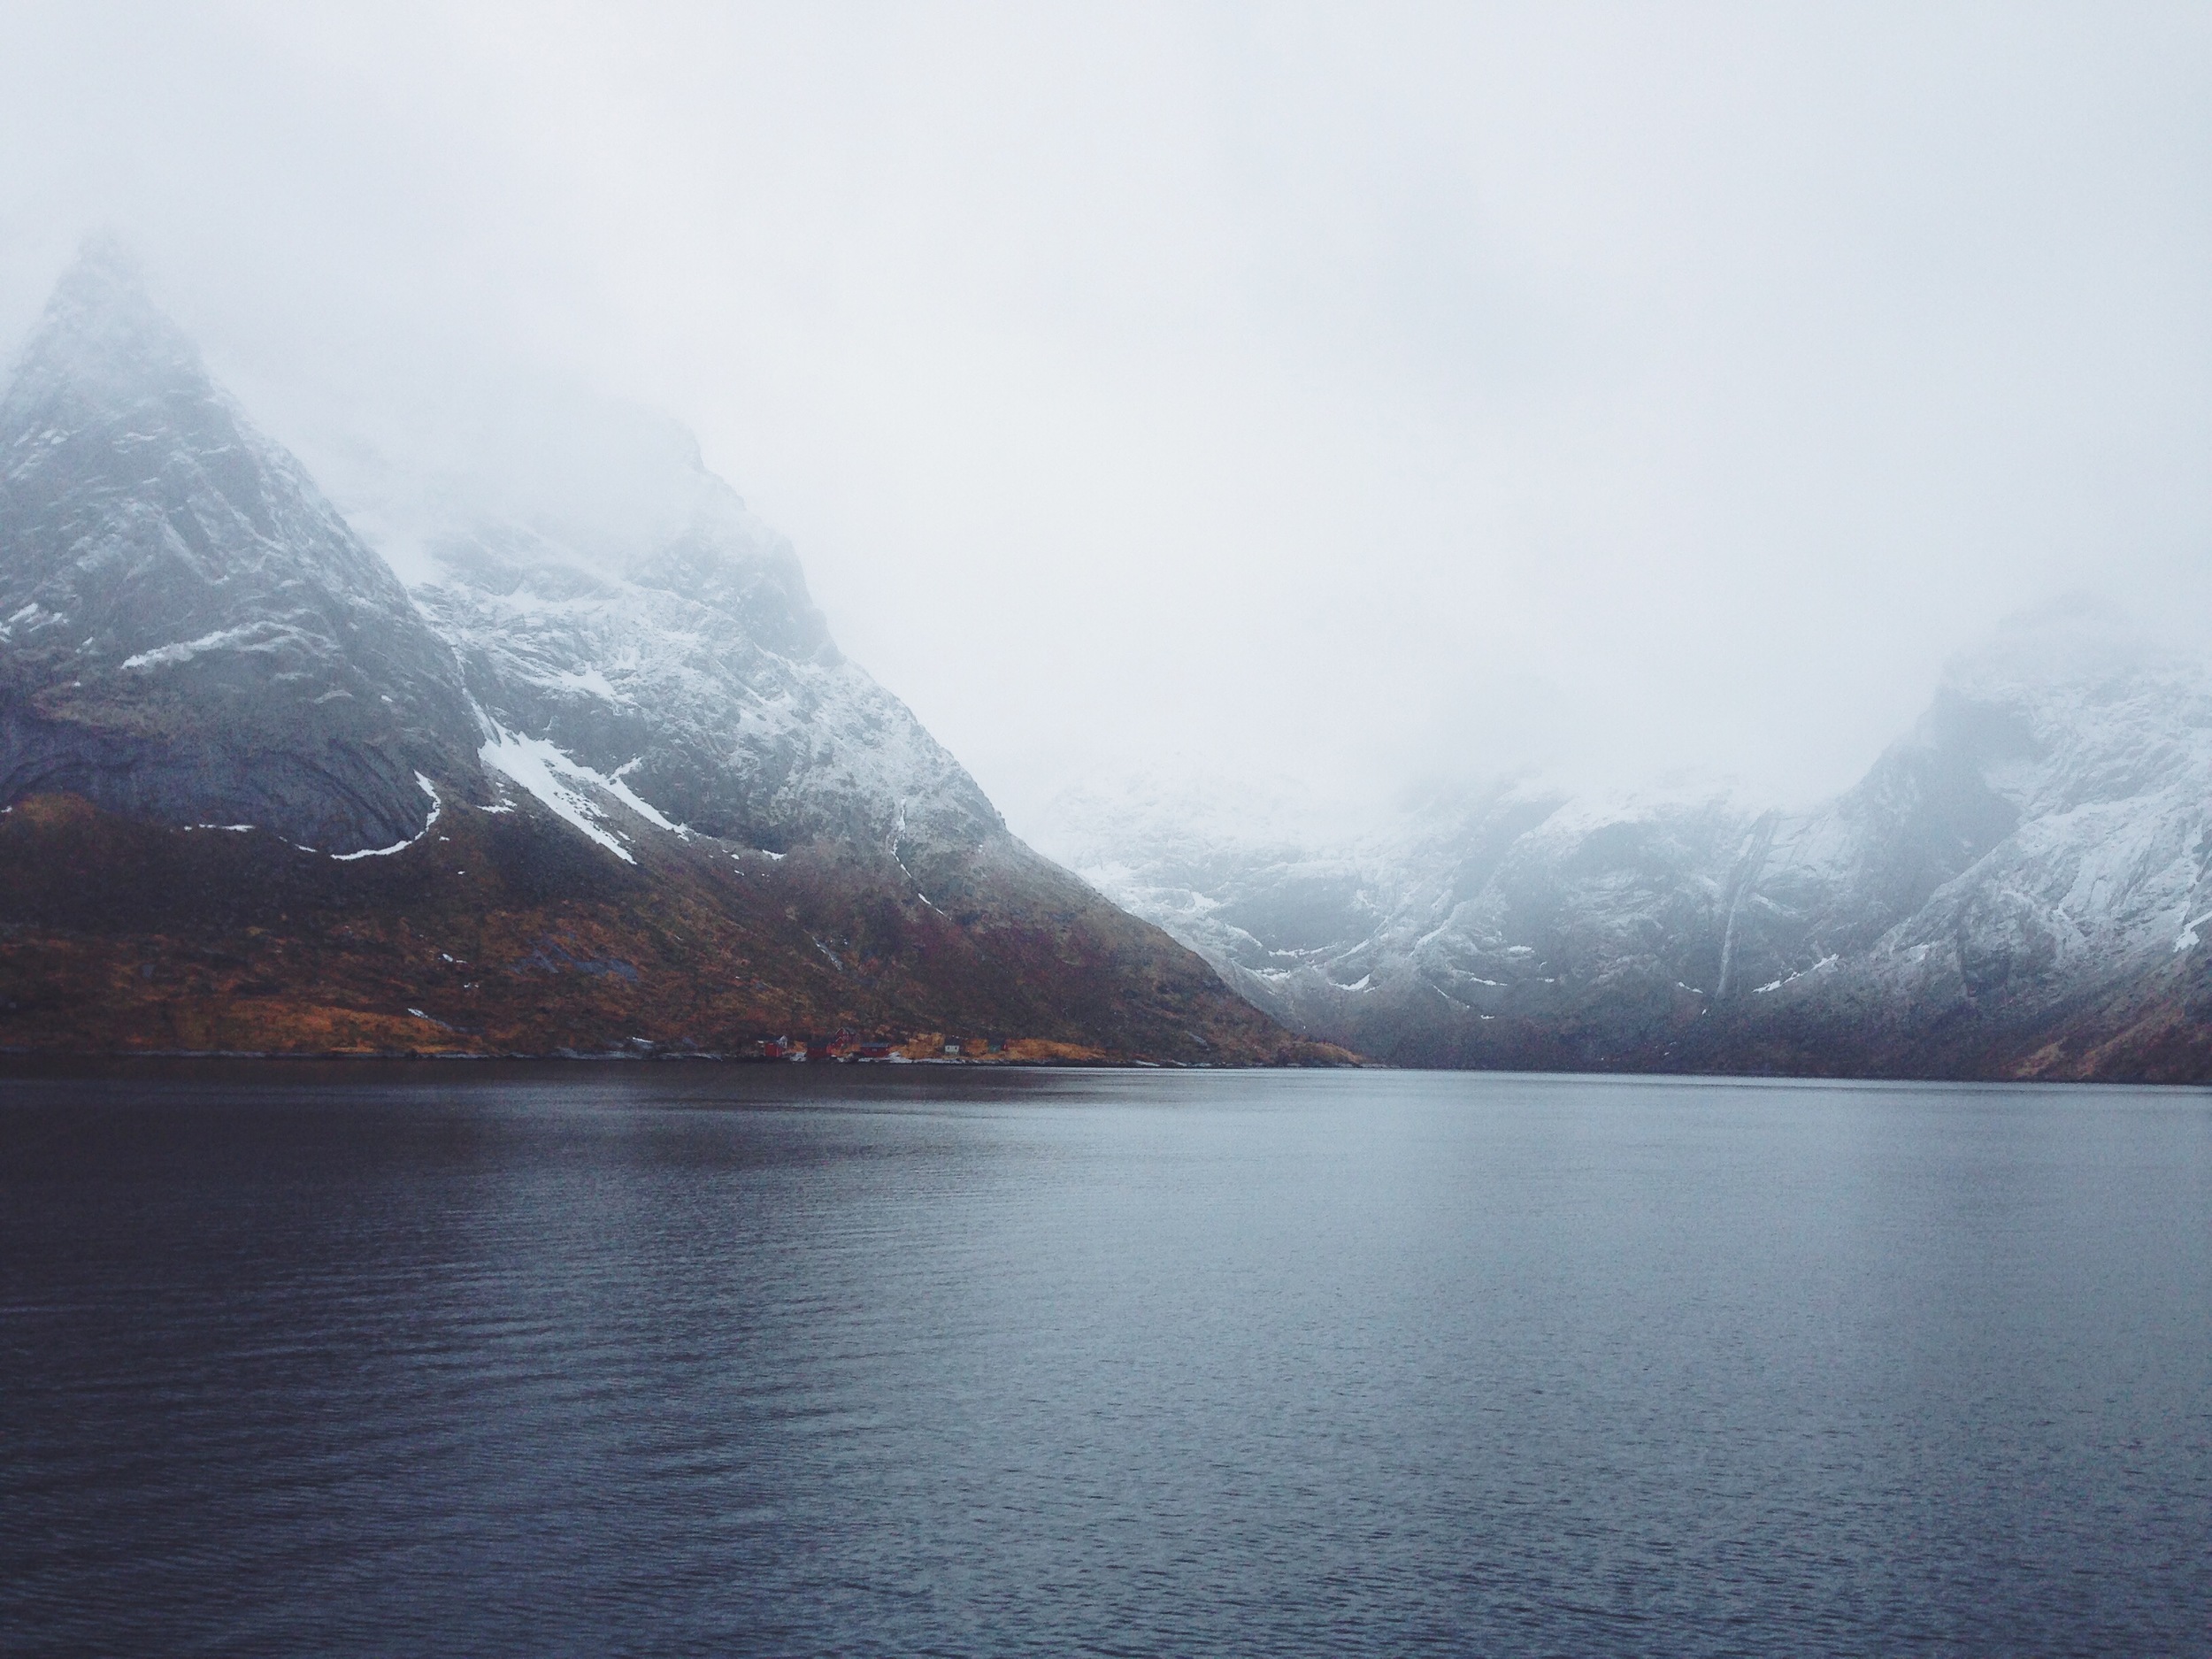   "Be Still"&nbsp;   Reinefjorden || Lofoten Islands, Norway ||&nbsp;March 2014 || Nikon D3000 